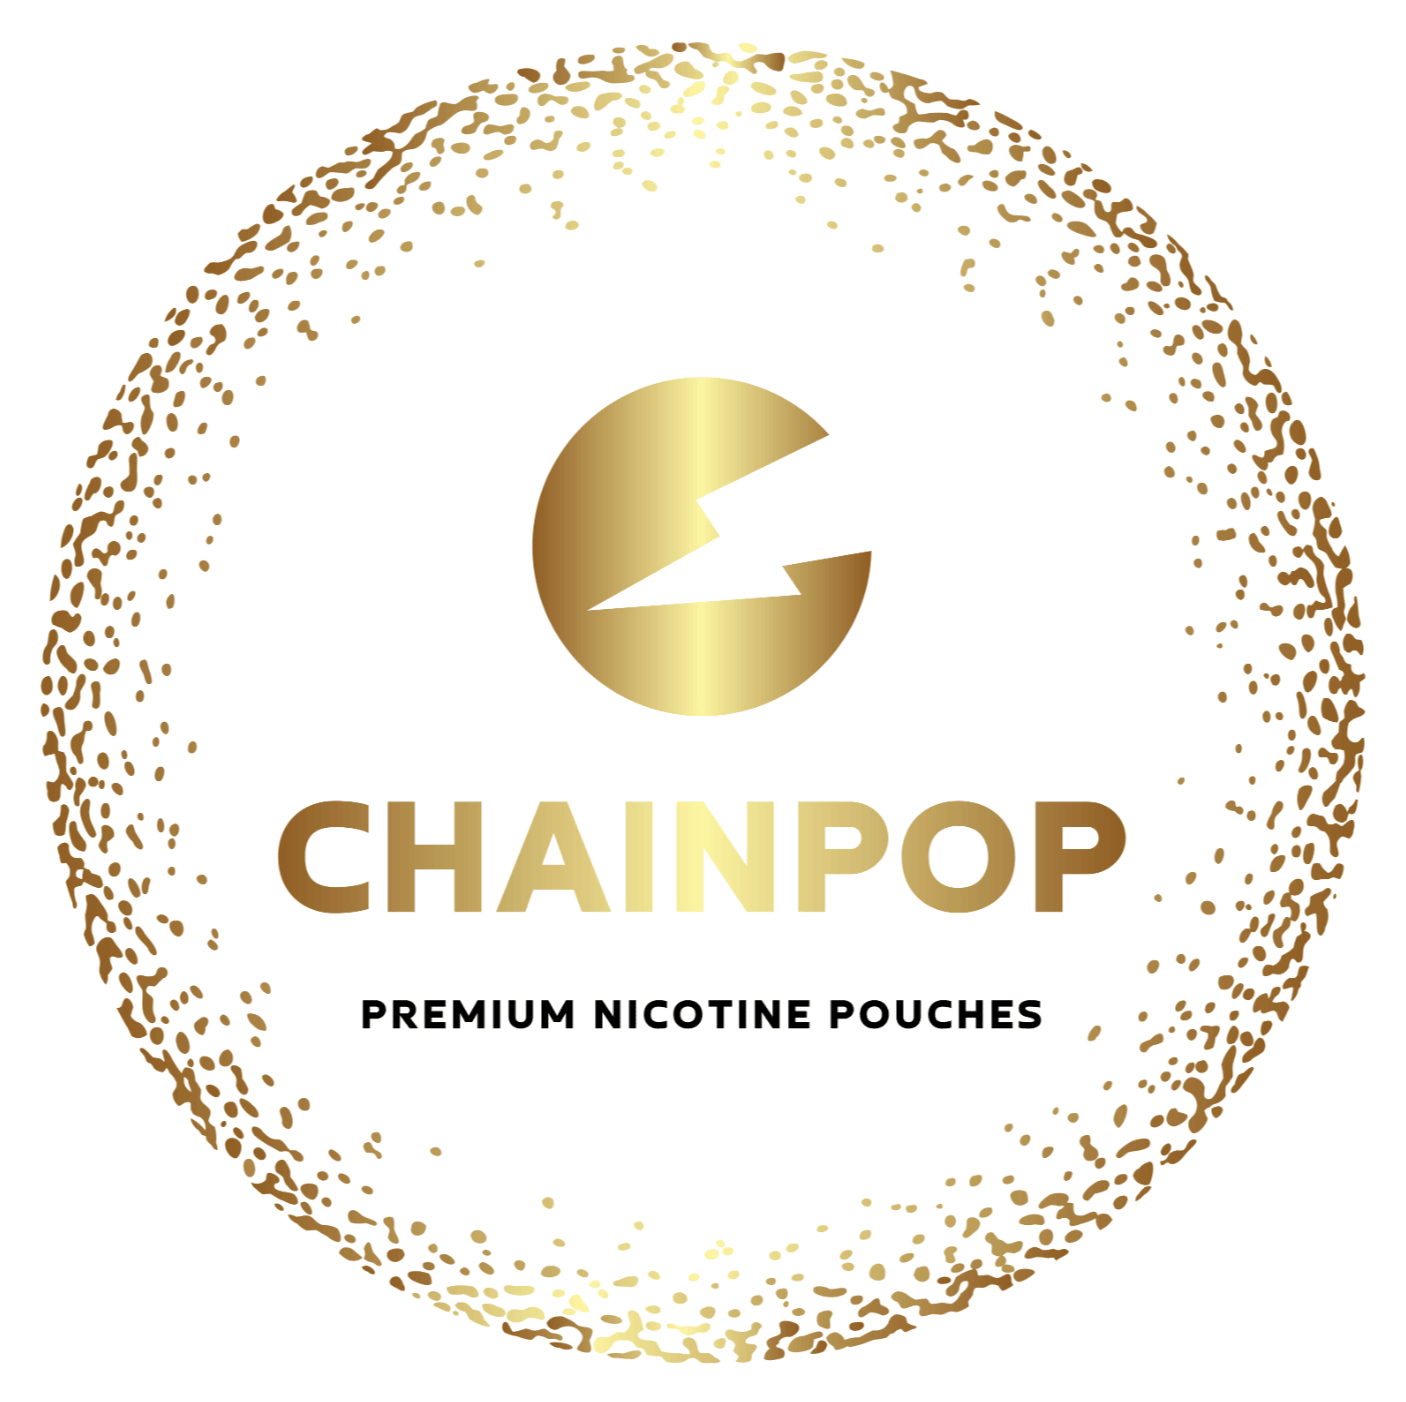 Chainpop nikotin tasakok logo